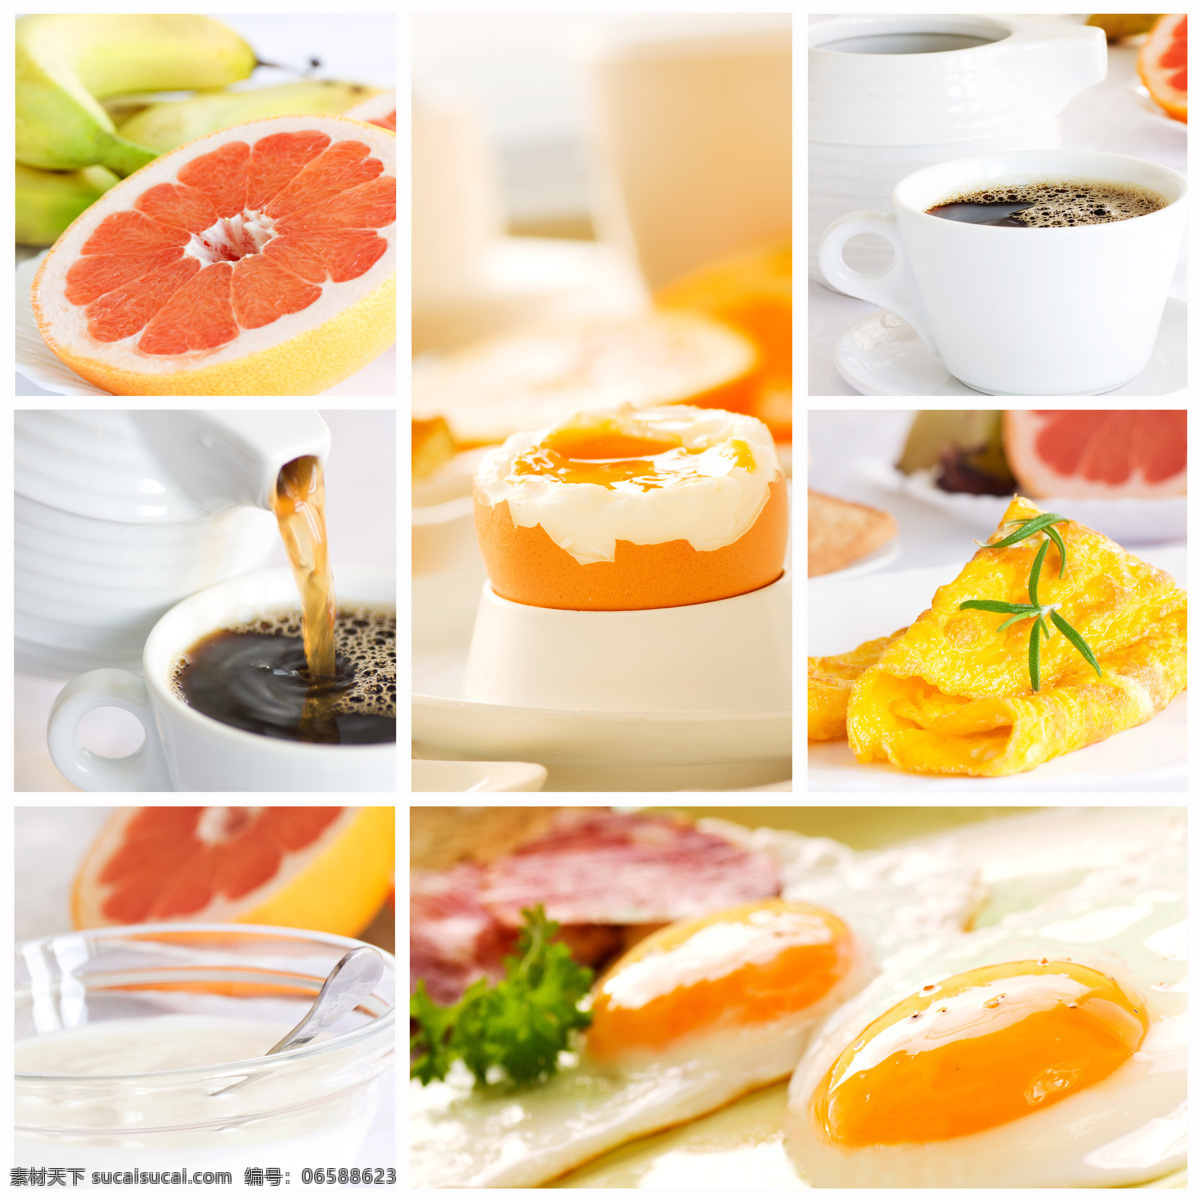 咖啡水果蛋挞 咖啡 水果 橙子 蛋挞 美食 美味 酒水饮料 餐饮美食 白色